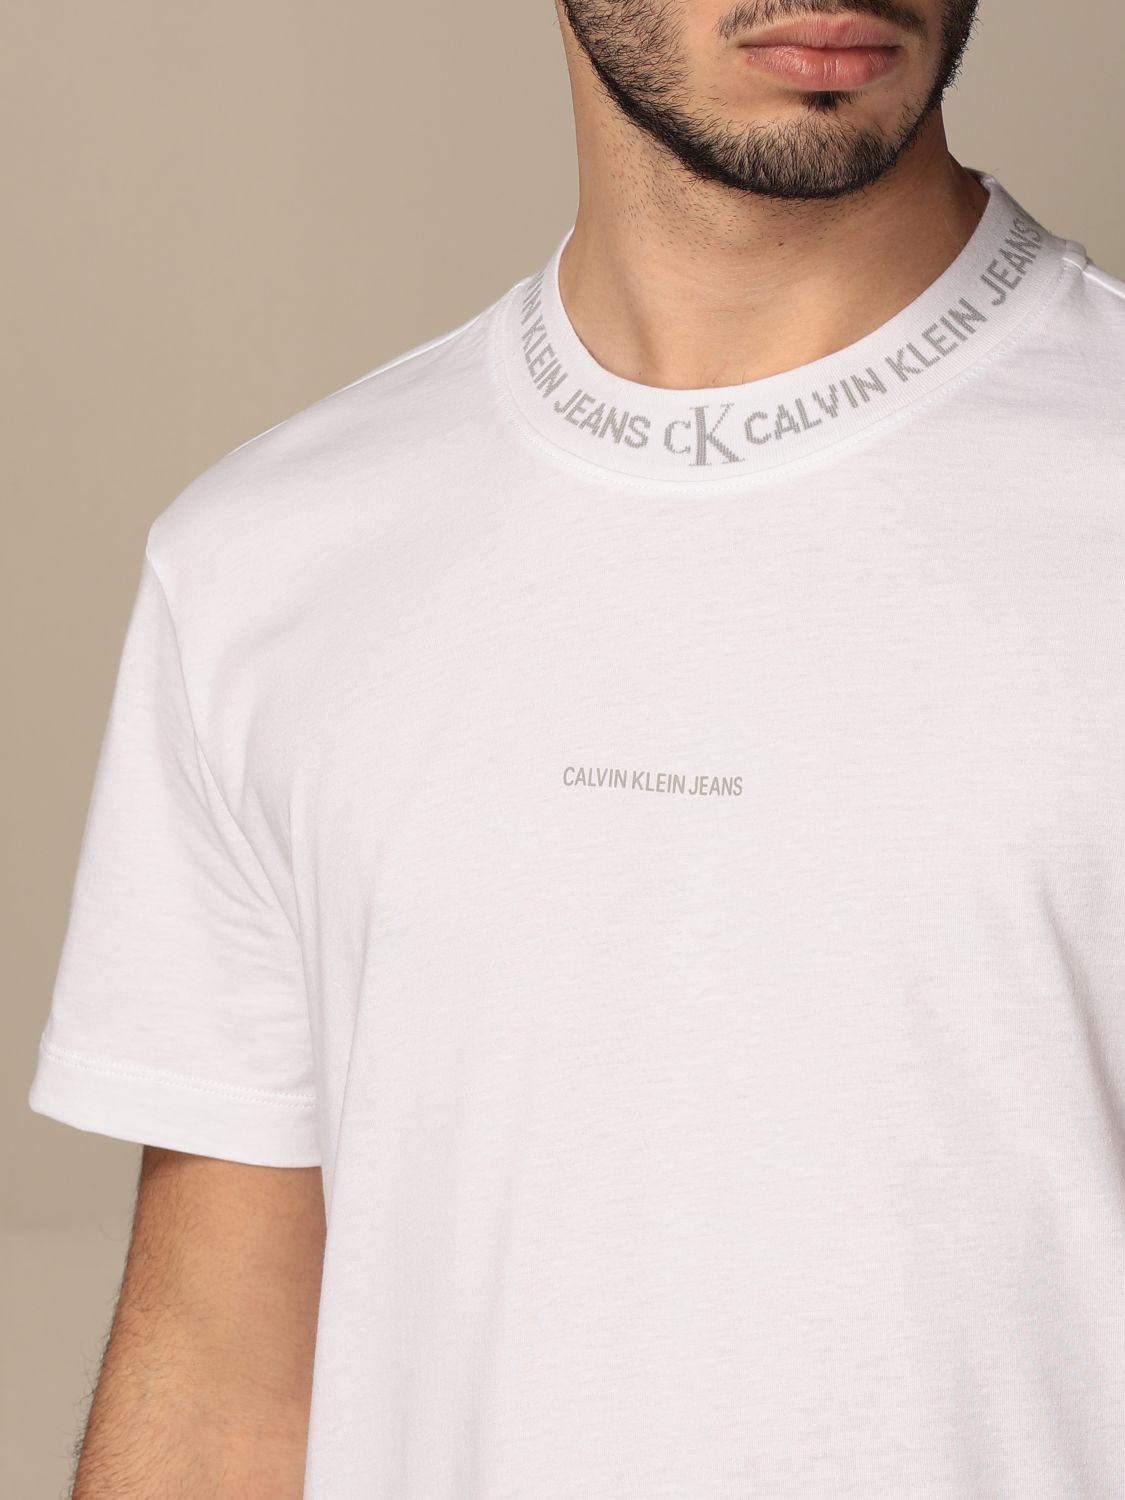 CALVIN KLEIN JEANS: Herren T-Shirt - Weiß | Calvin Klein Jeans T-Shirt  J30J317096 online auf